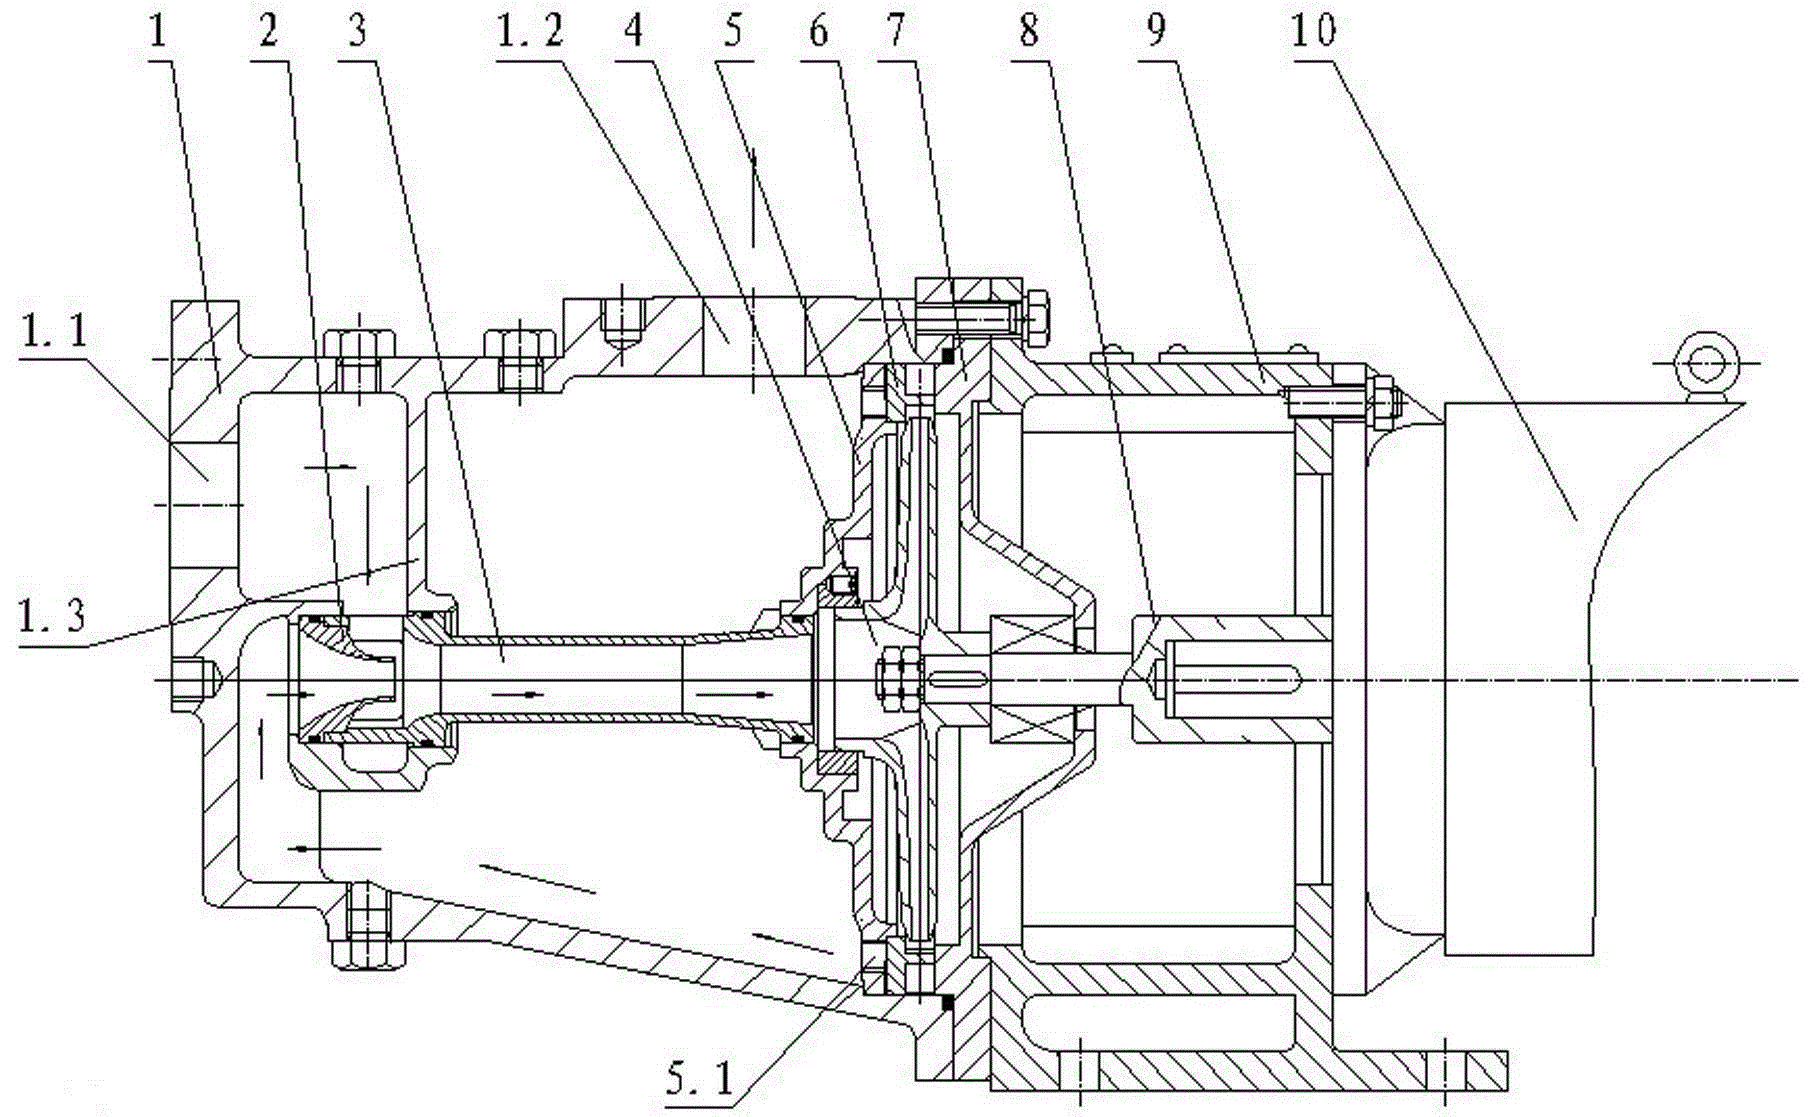 喷雾器水泵结构原理图图片